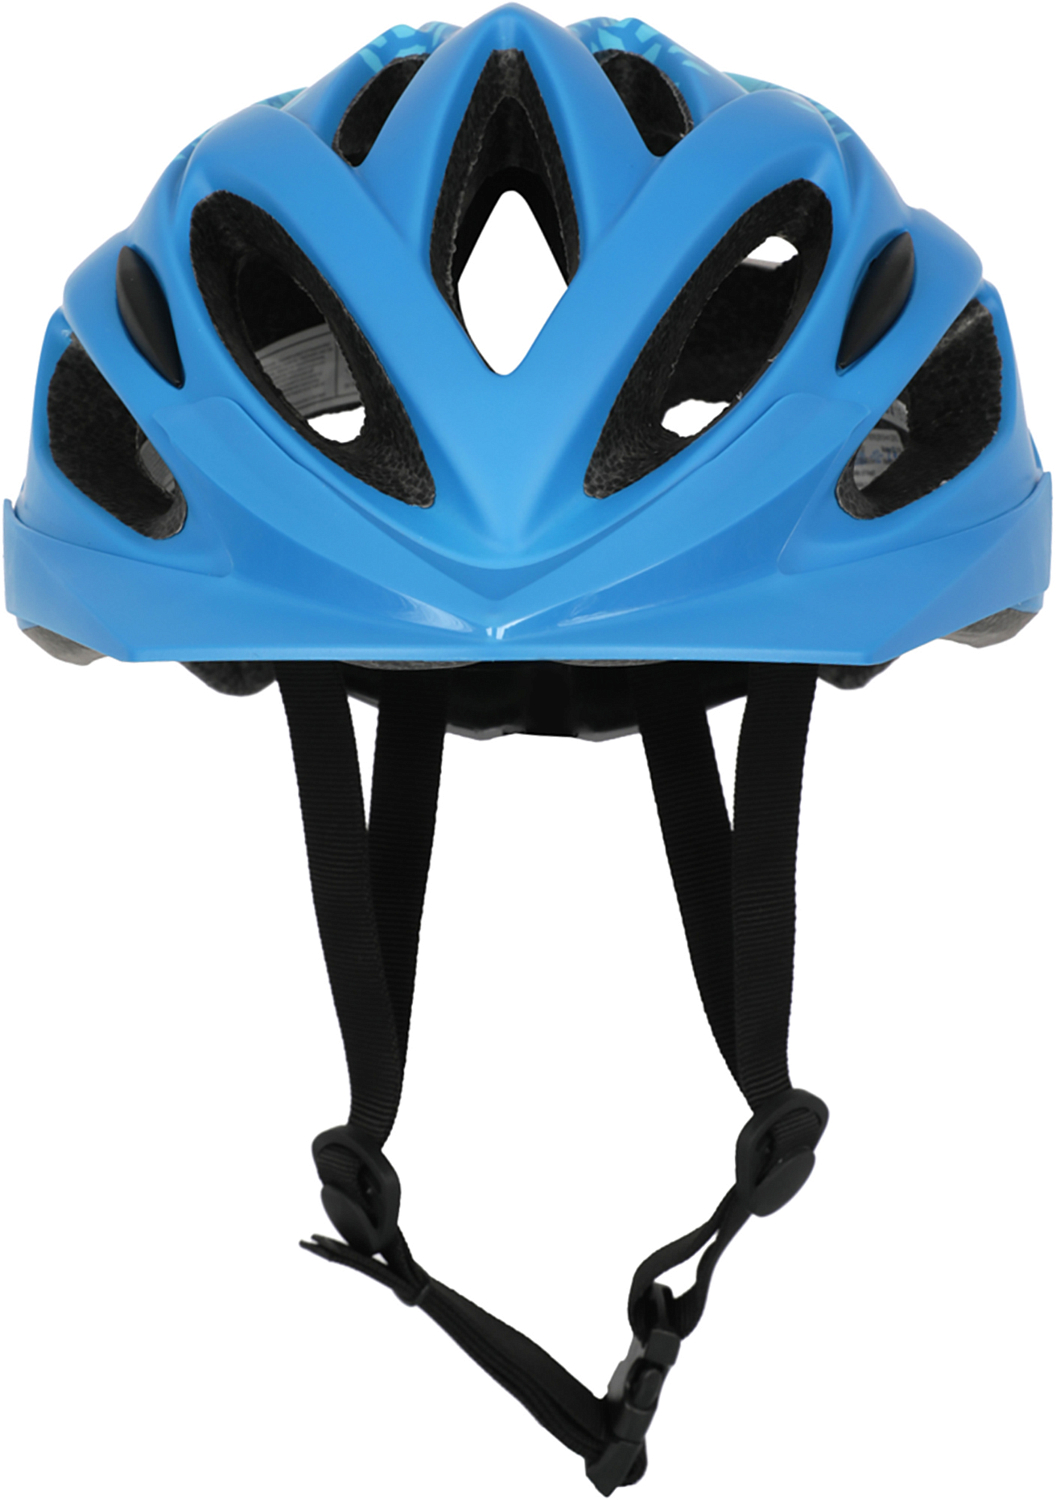 Велошлем Oxford Spectre Helmet Matt Blue